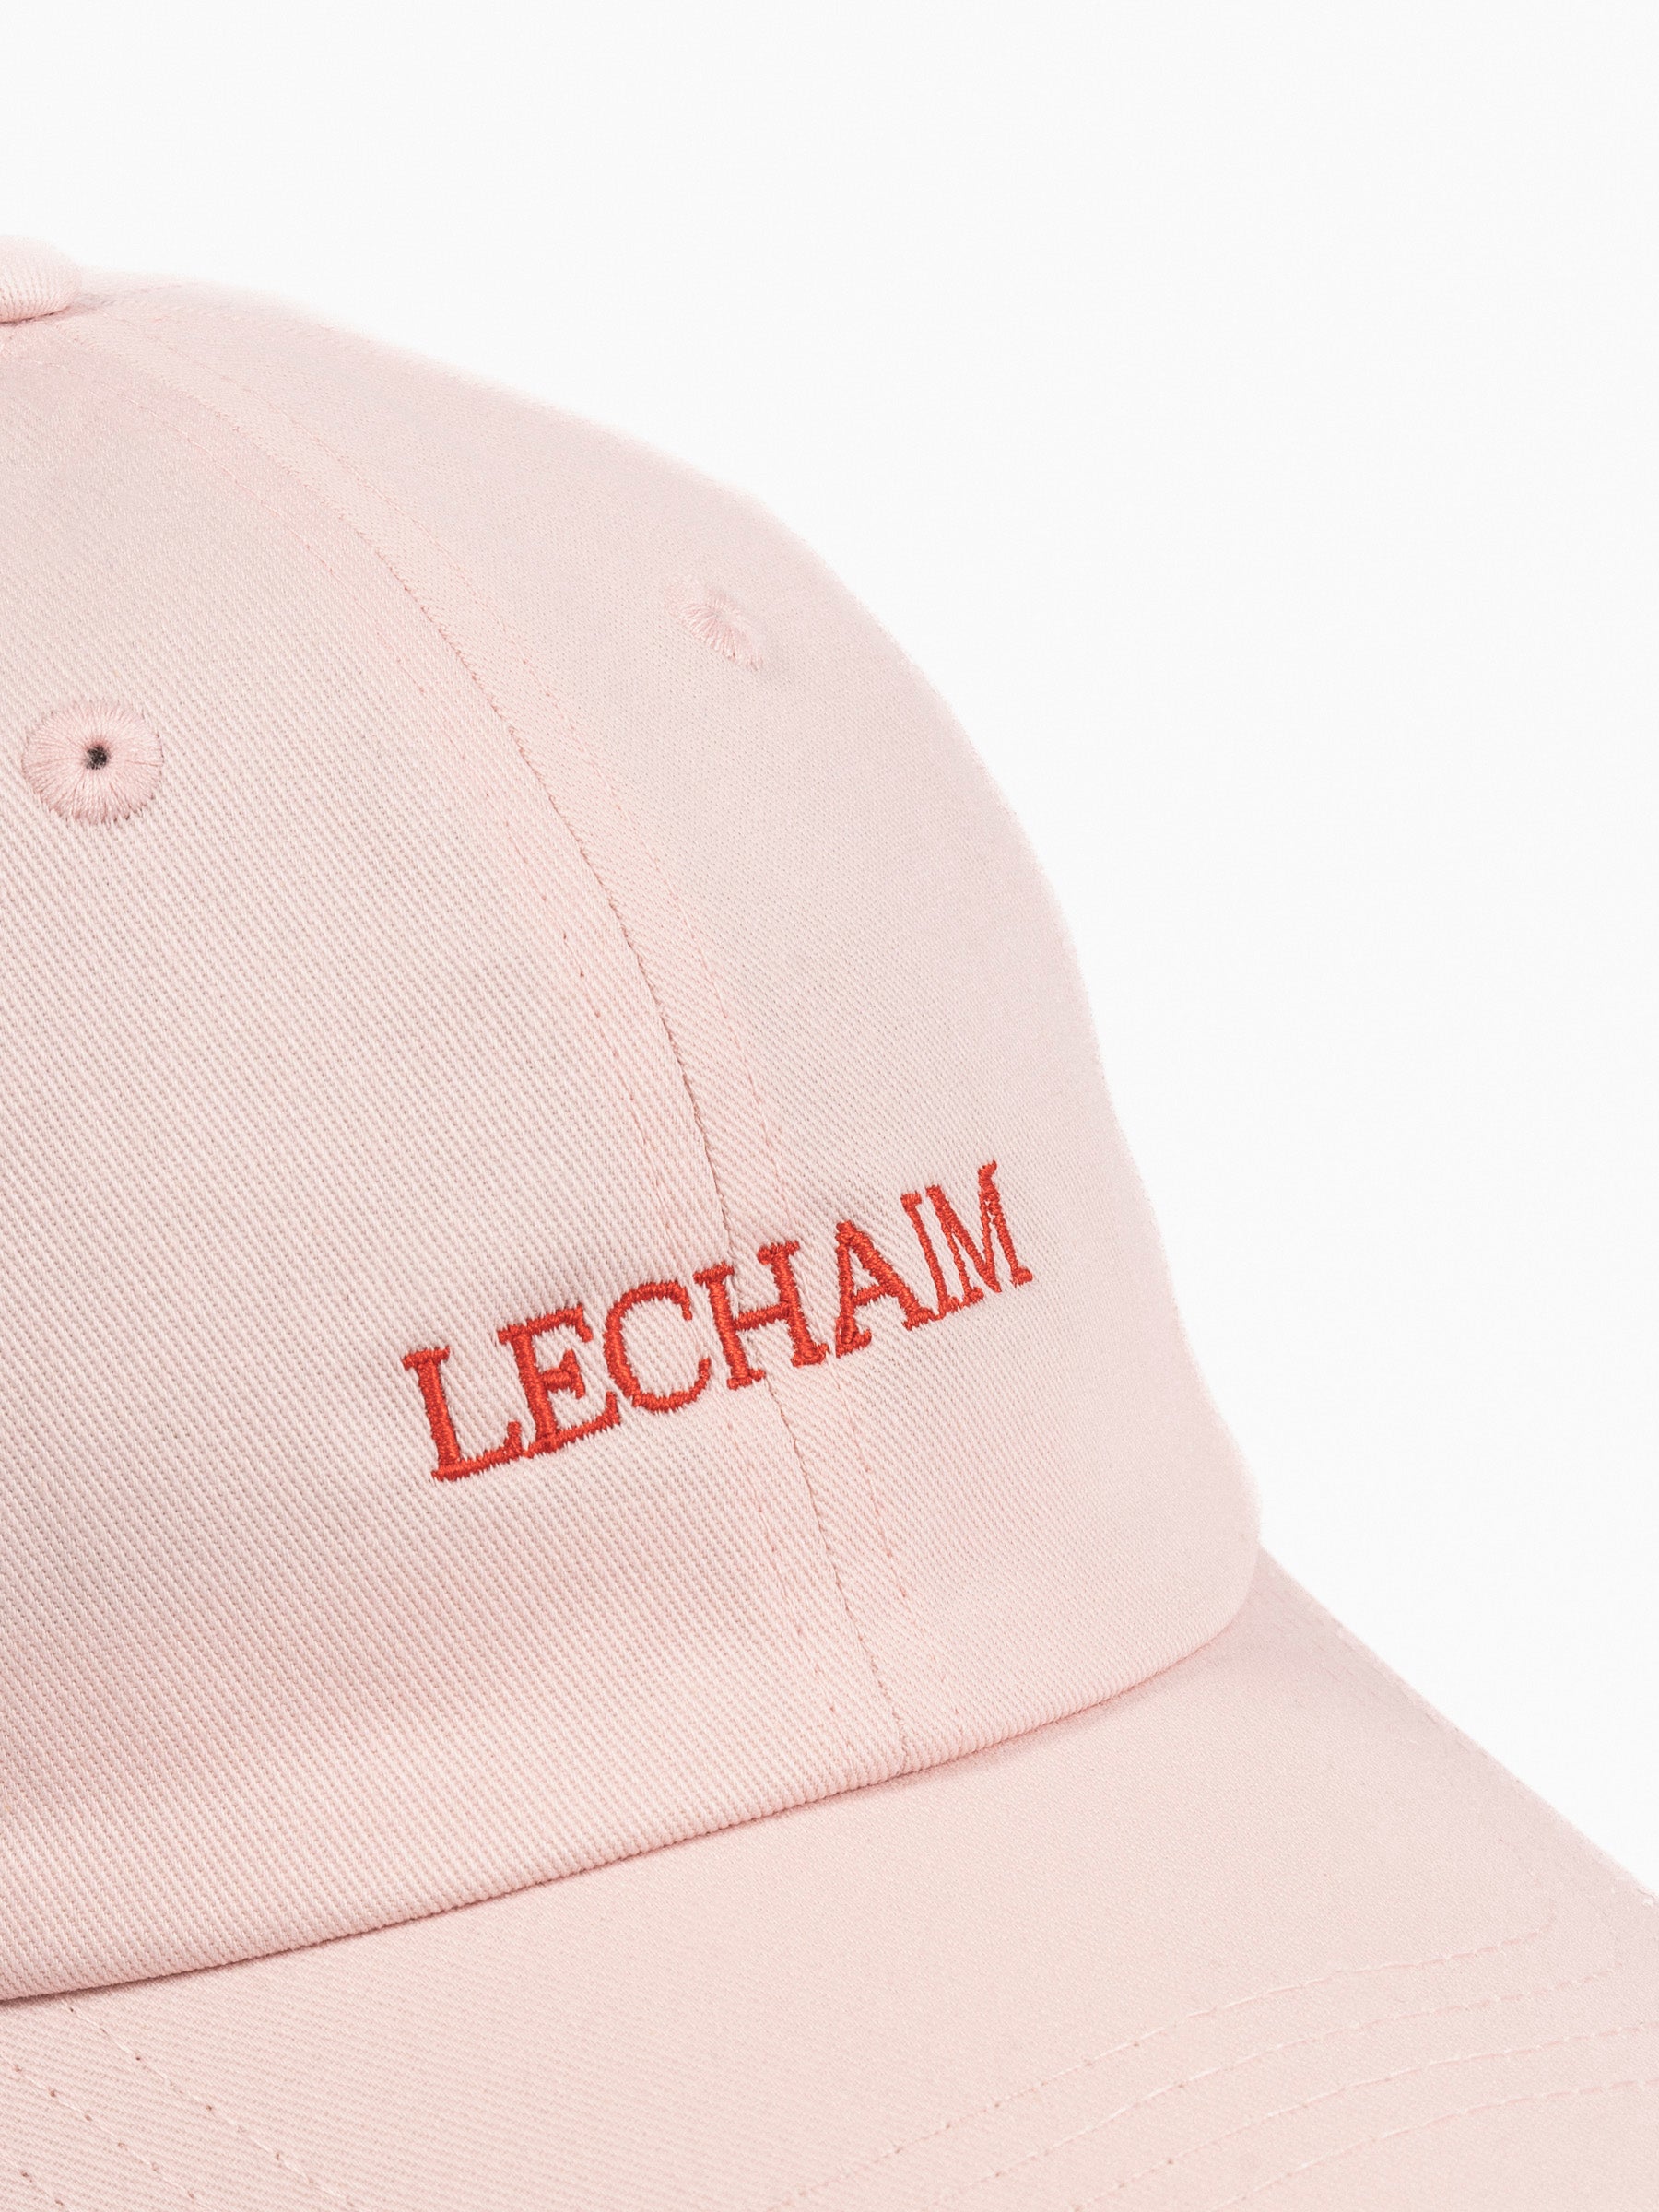 Lechaim Vintage Cap Pink/Red